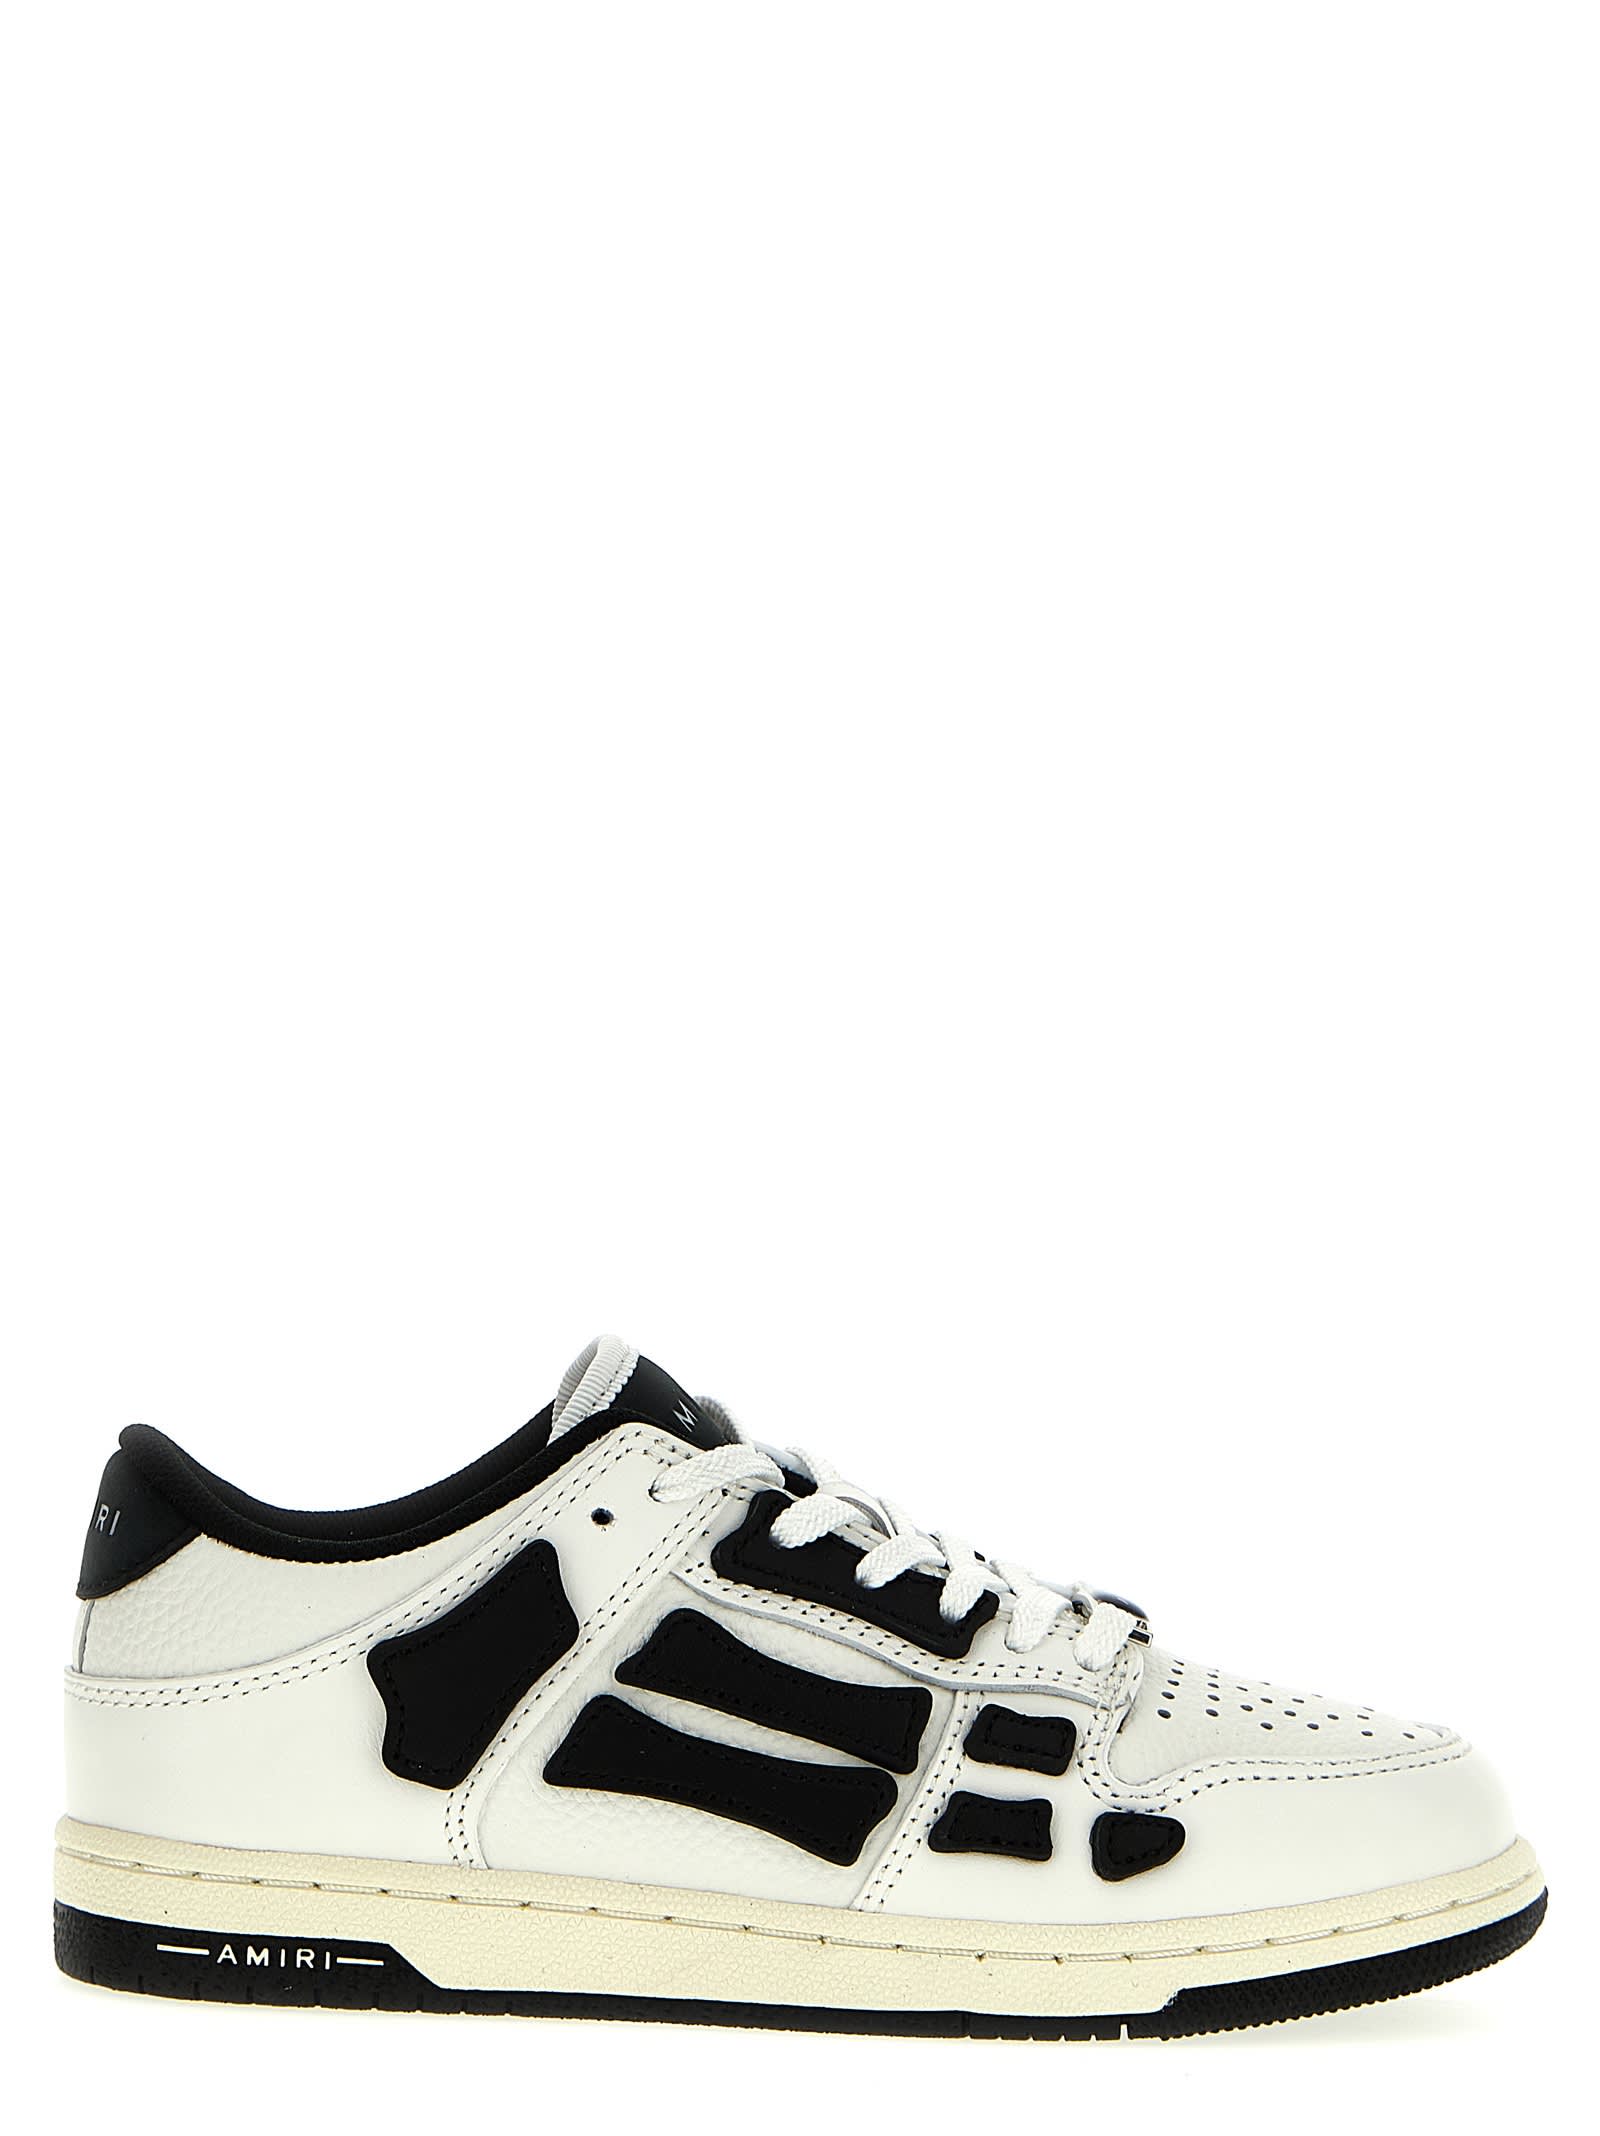 Shop Amiri Asymmetric Low Sneakers In White Black